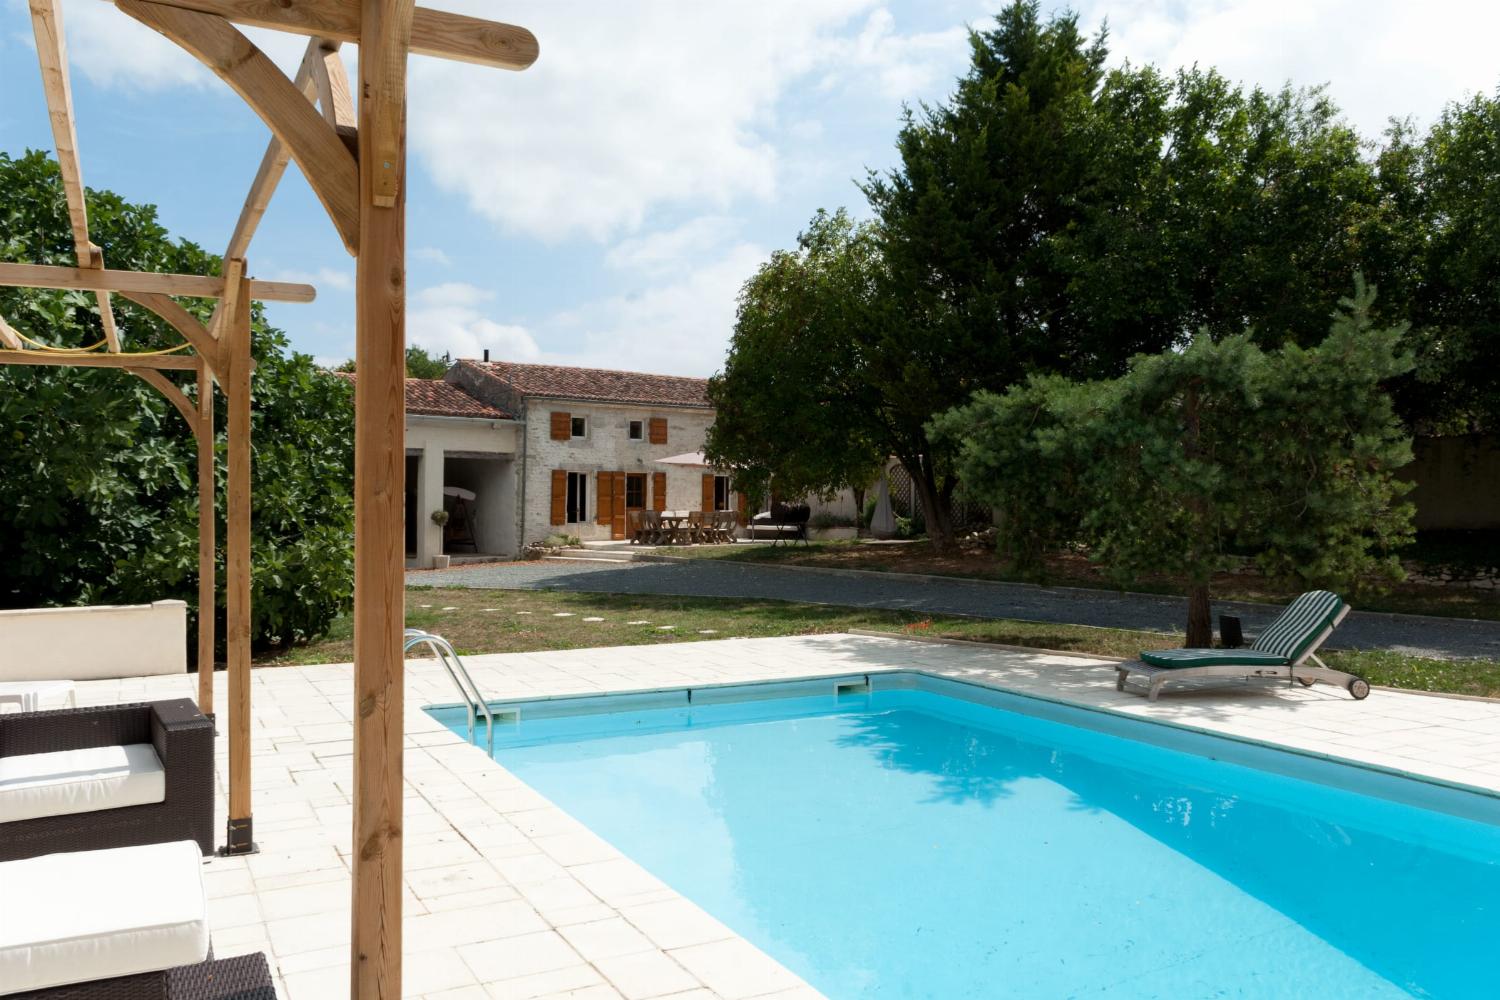 Maison de vacances dans le sud-ouest de la France avec piscine privée